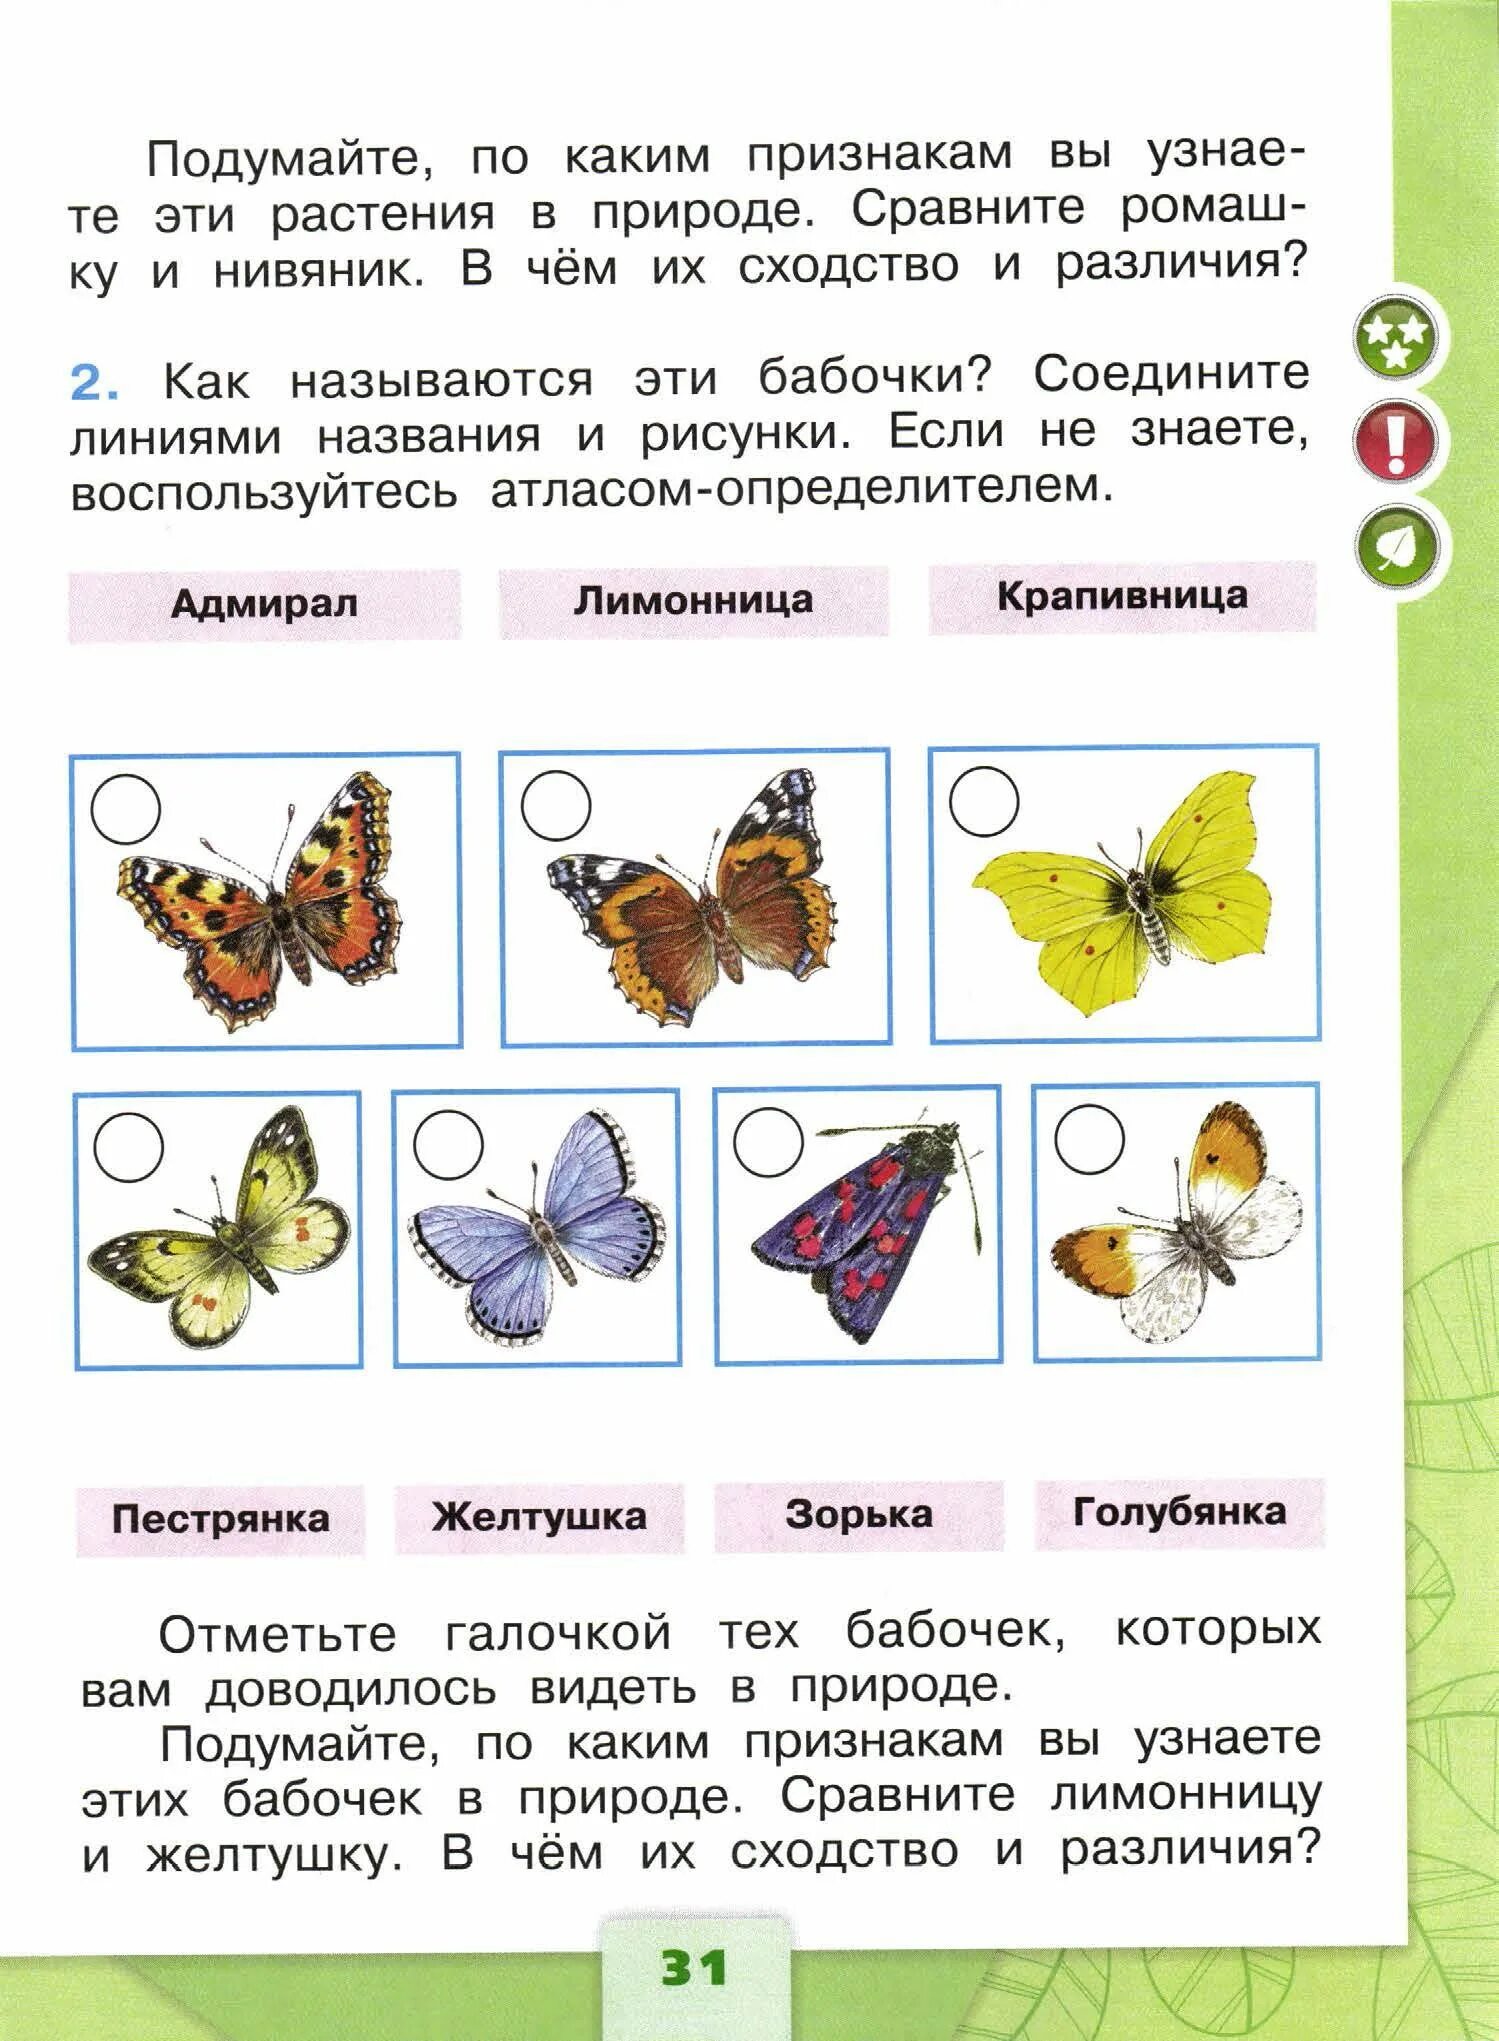 Бабочки по окружающему миру 1 класс 2 часть ответы Плешаков. Плешаков окружающий мир 1 класс бабочки и их названия. Бабочки окружающий мир 1 класс рабочая тетрадь. Атлас-определитель 1 класс окружающий мир бабочки.